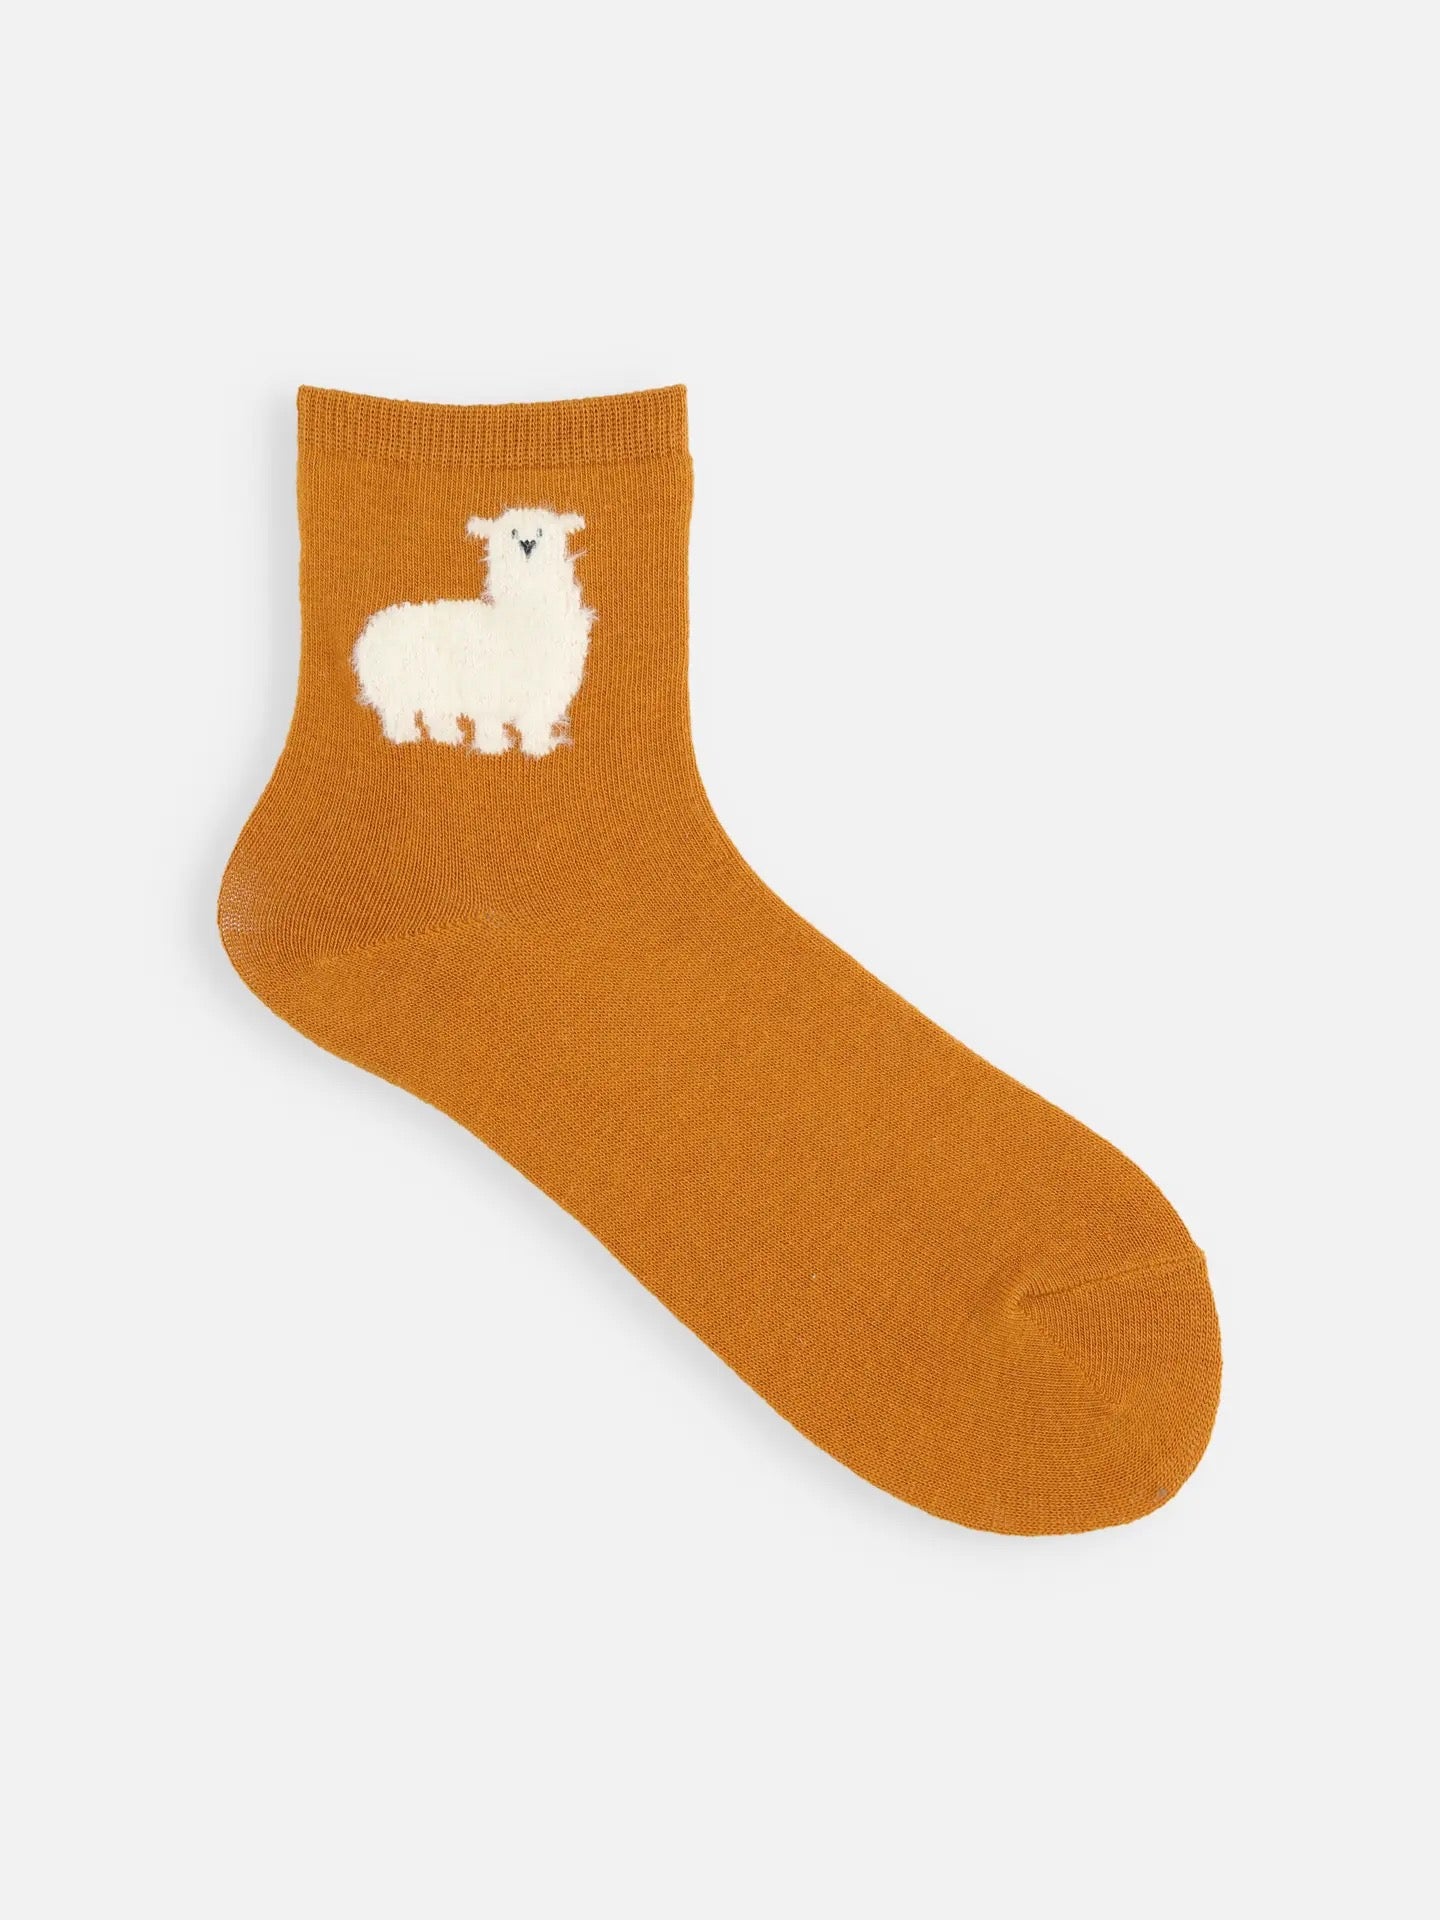 靴下屋Tabio小动物图案舒适短筒袜 15色选